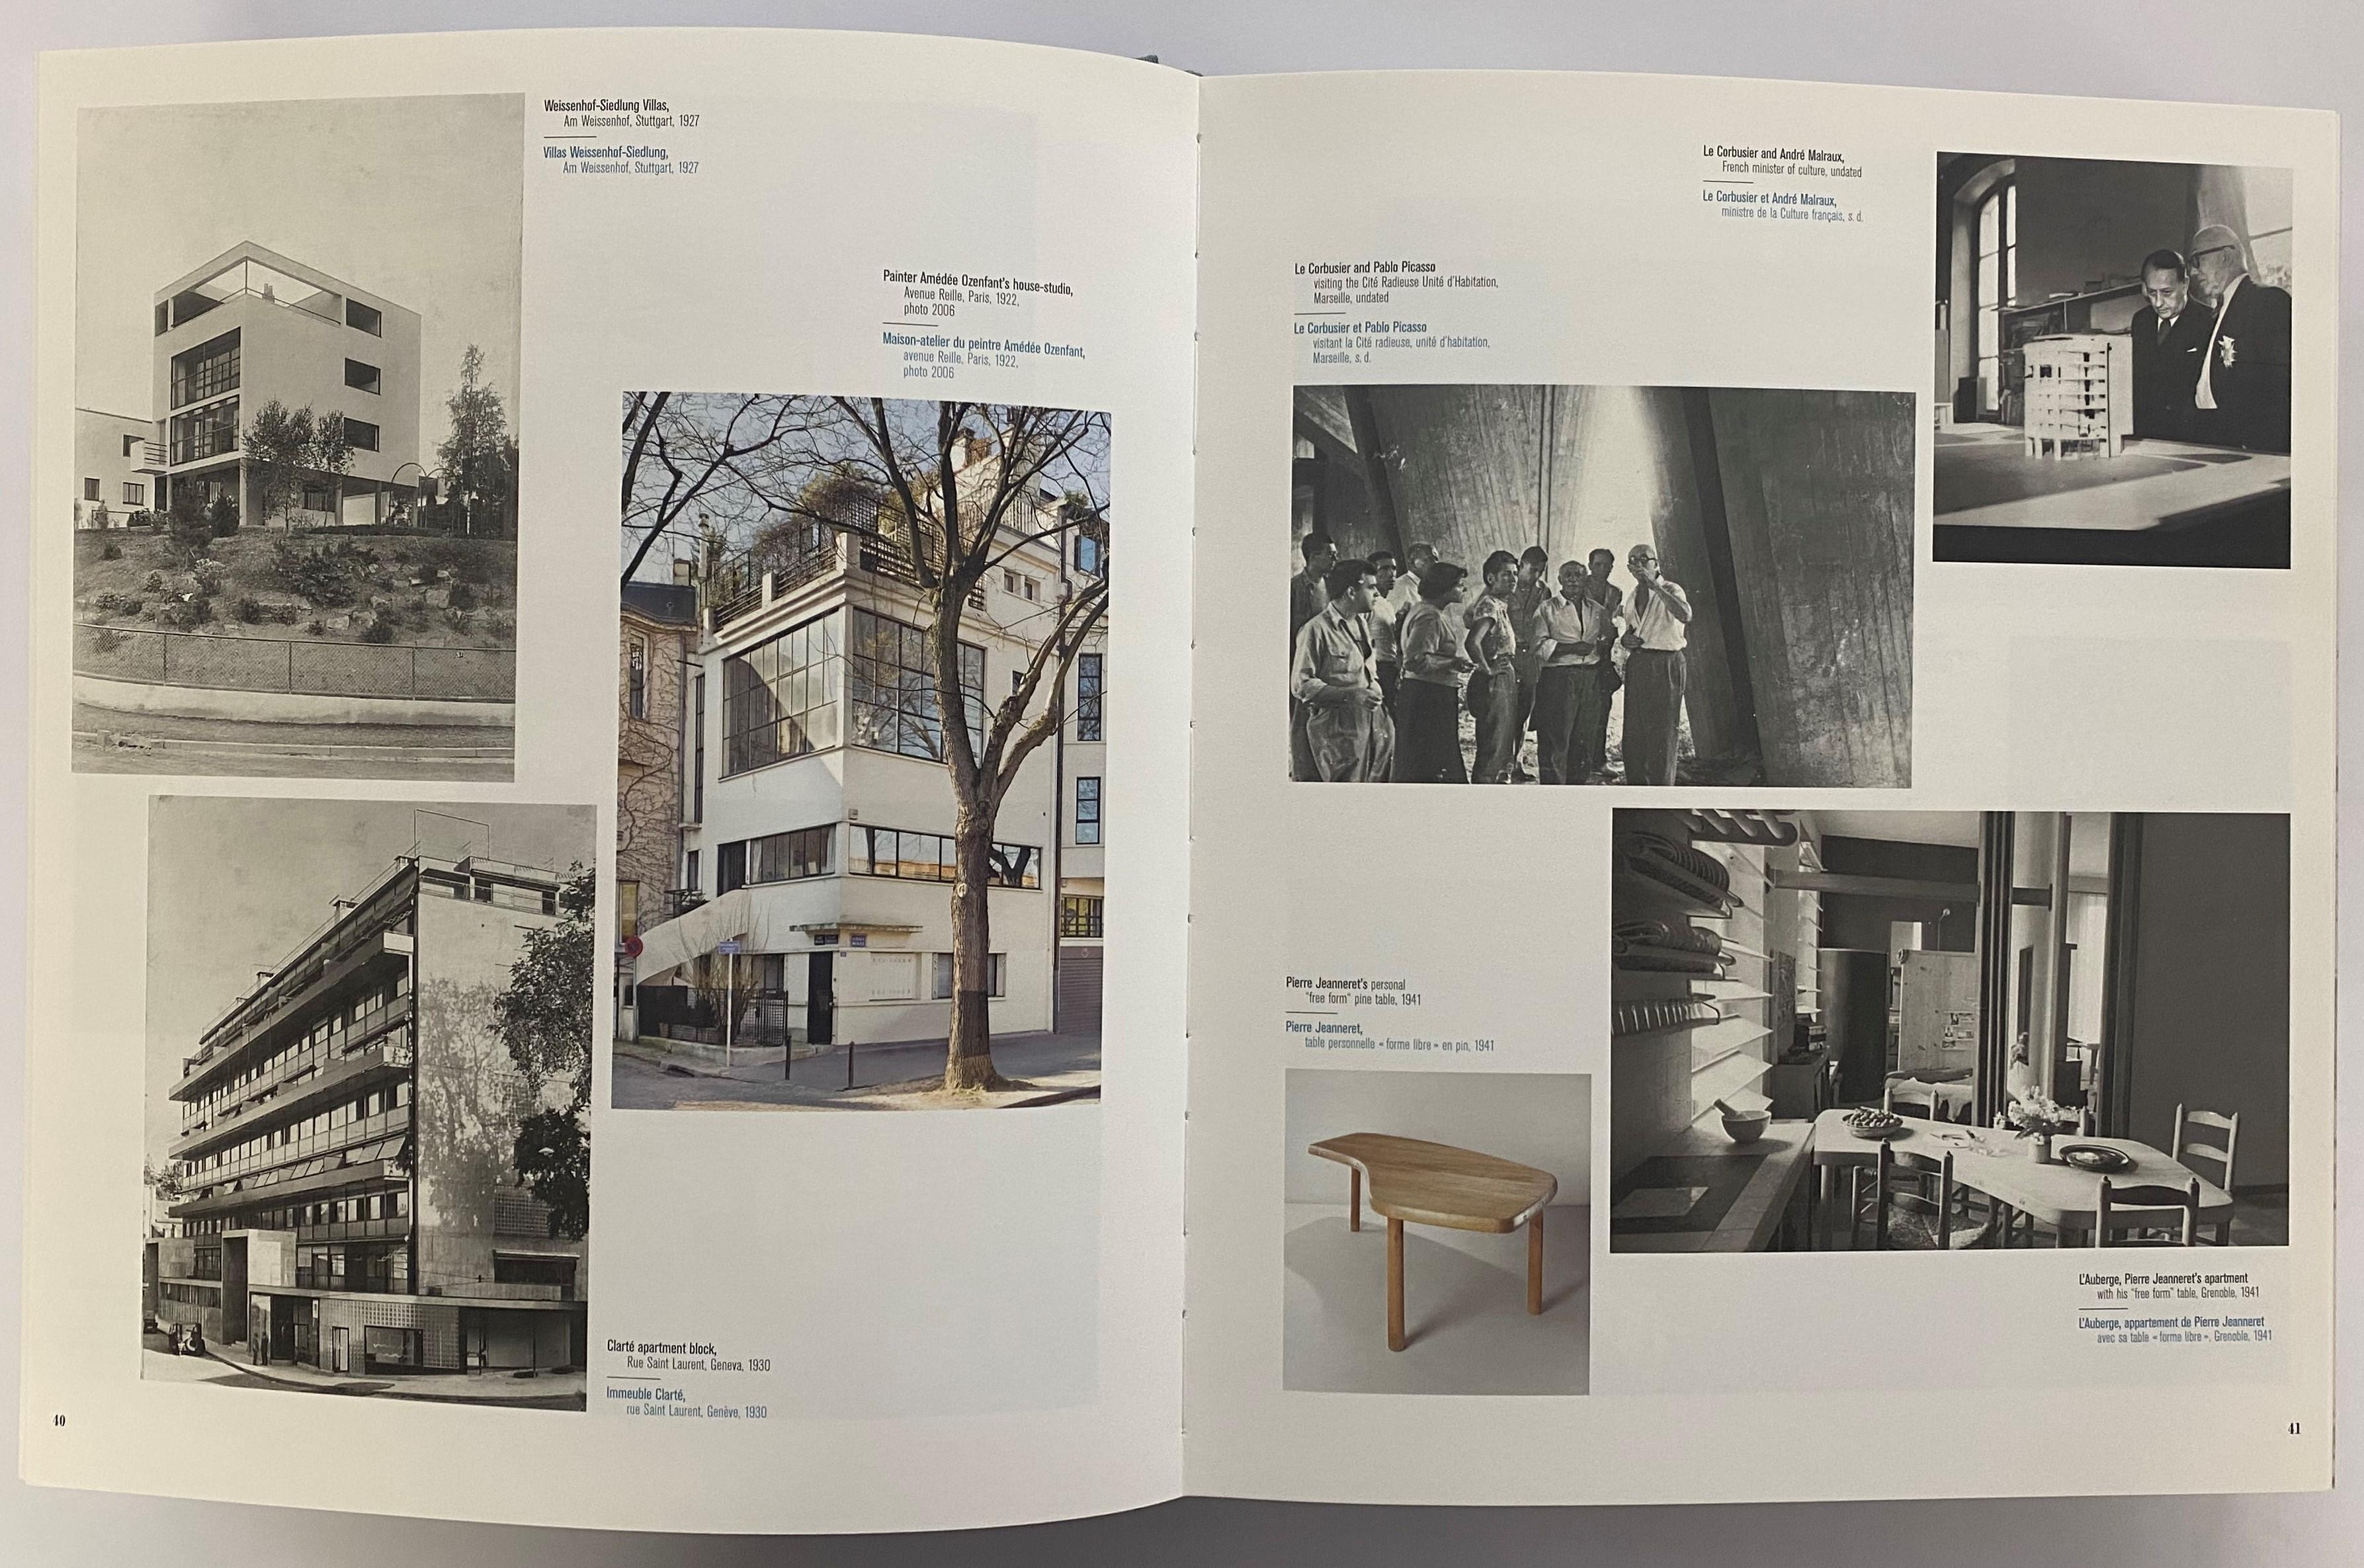 par Patrick Seguin
Cet ouvrage magnifique et complet documente l'énorme projet de Chandigarh de Le Corbusier et Pierre Jeanneret - les bâtiments et le mobilier (aujourd'hui considérés comme des chefs-d'œuvre de l'architecture et du design du XXe